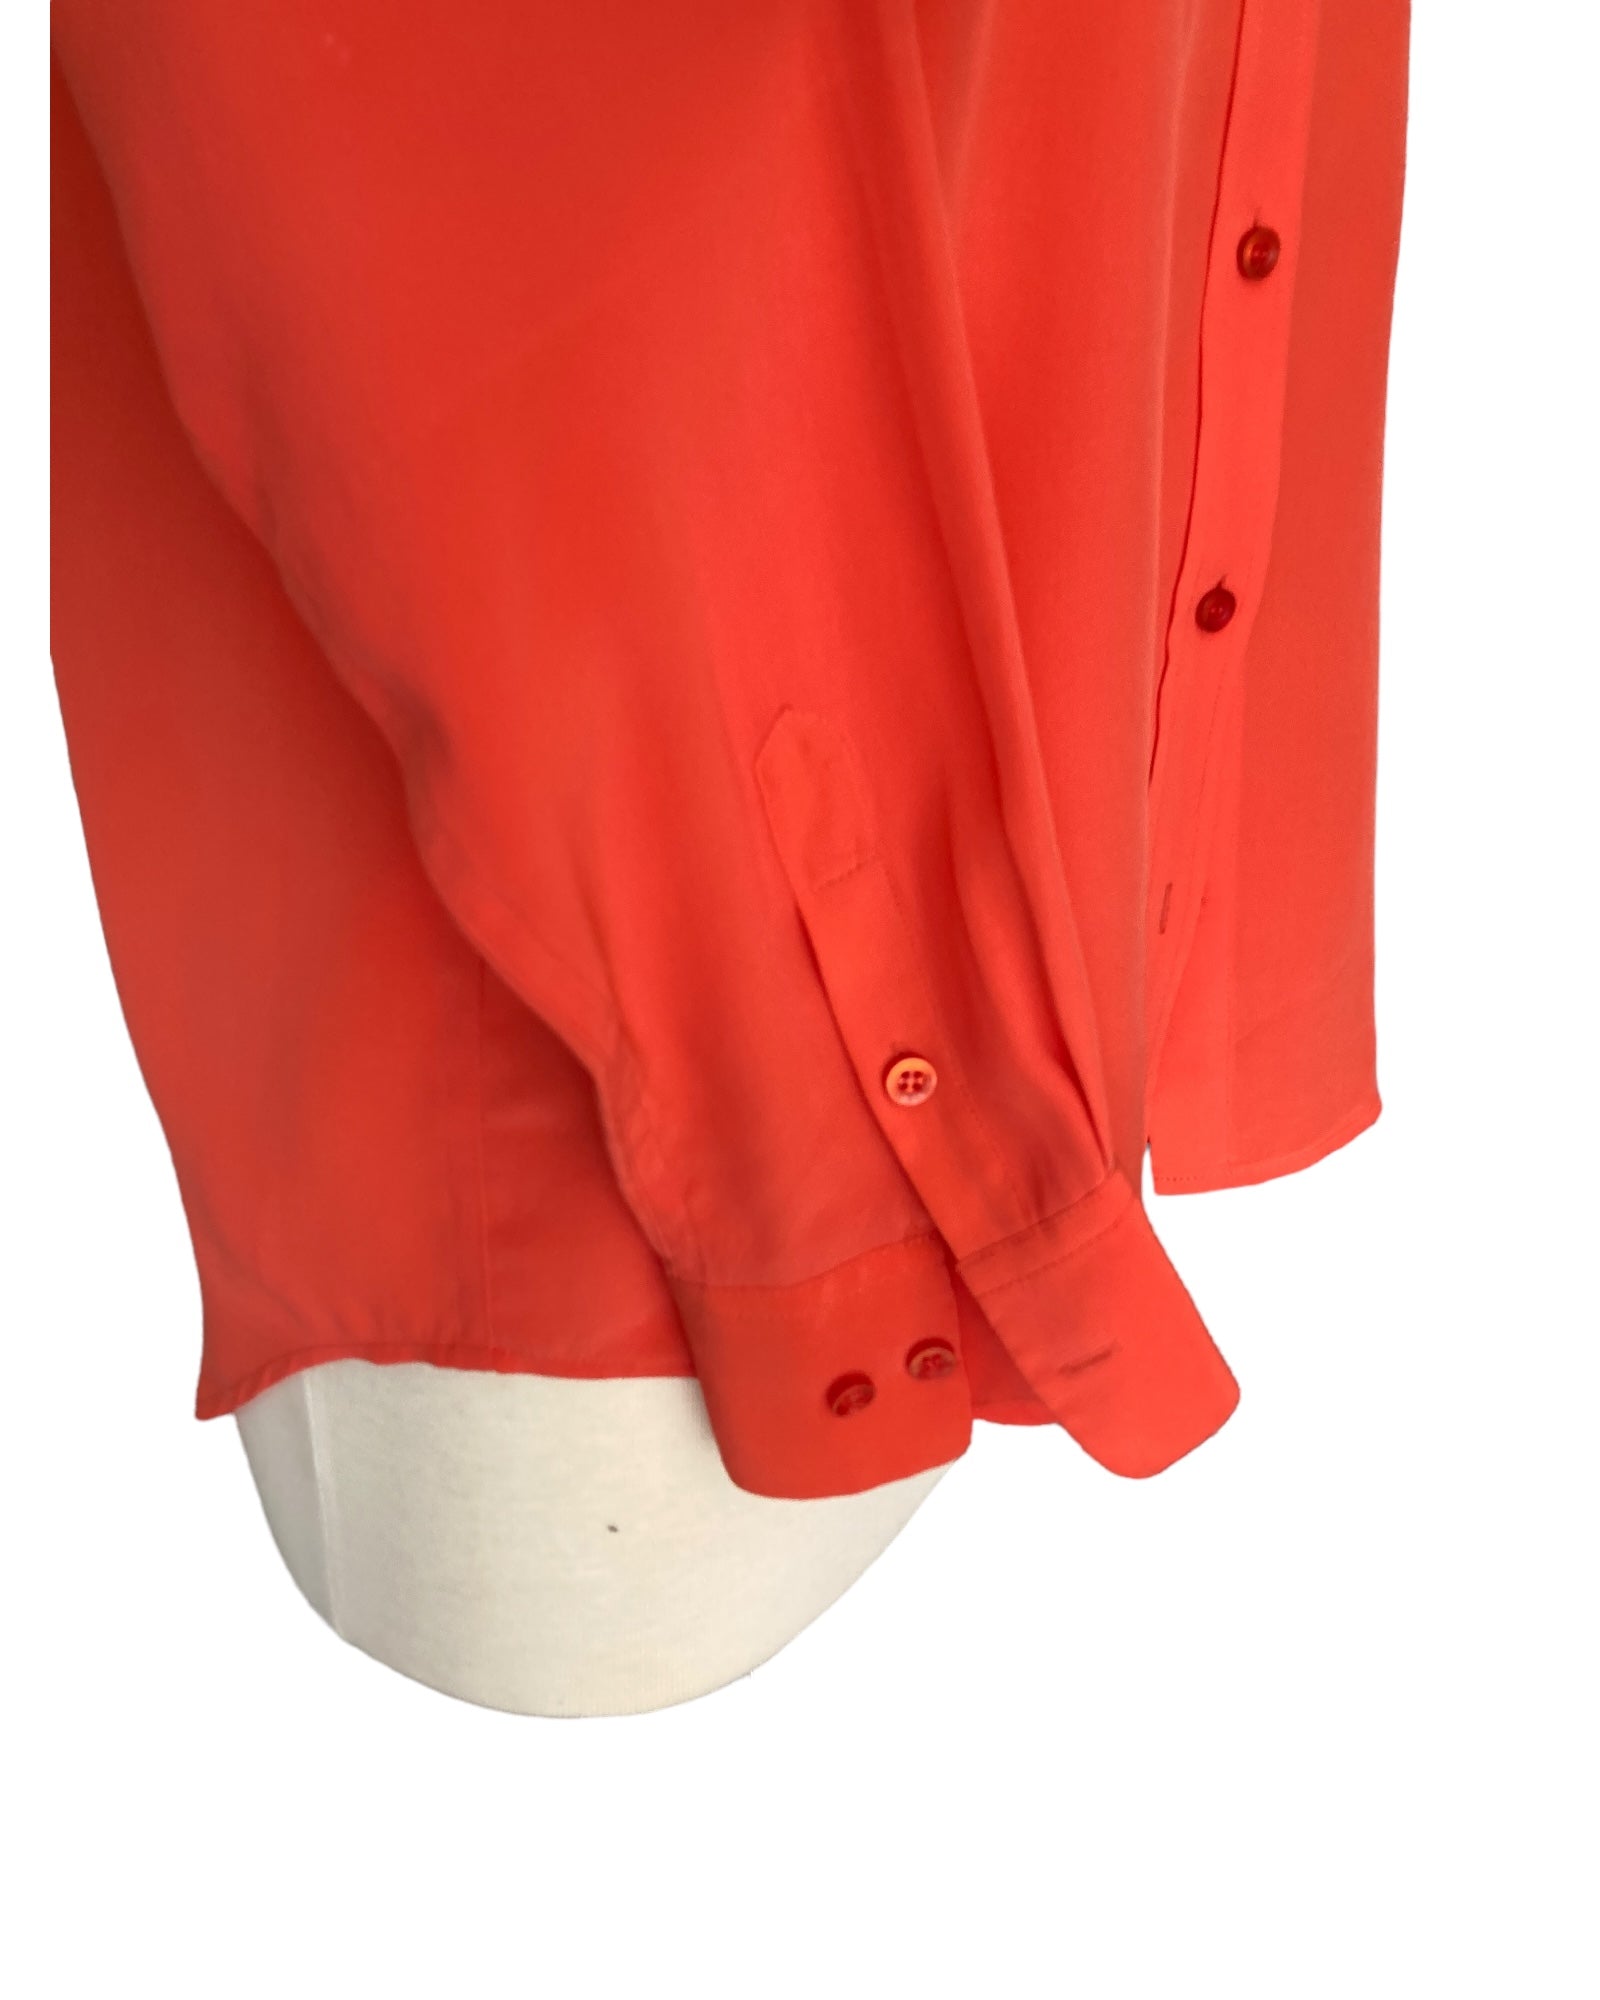 Equipment Orange Silk Shirt, S